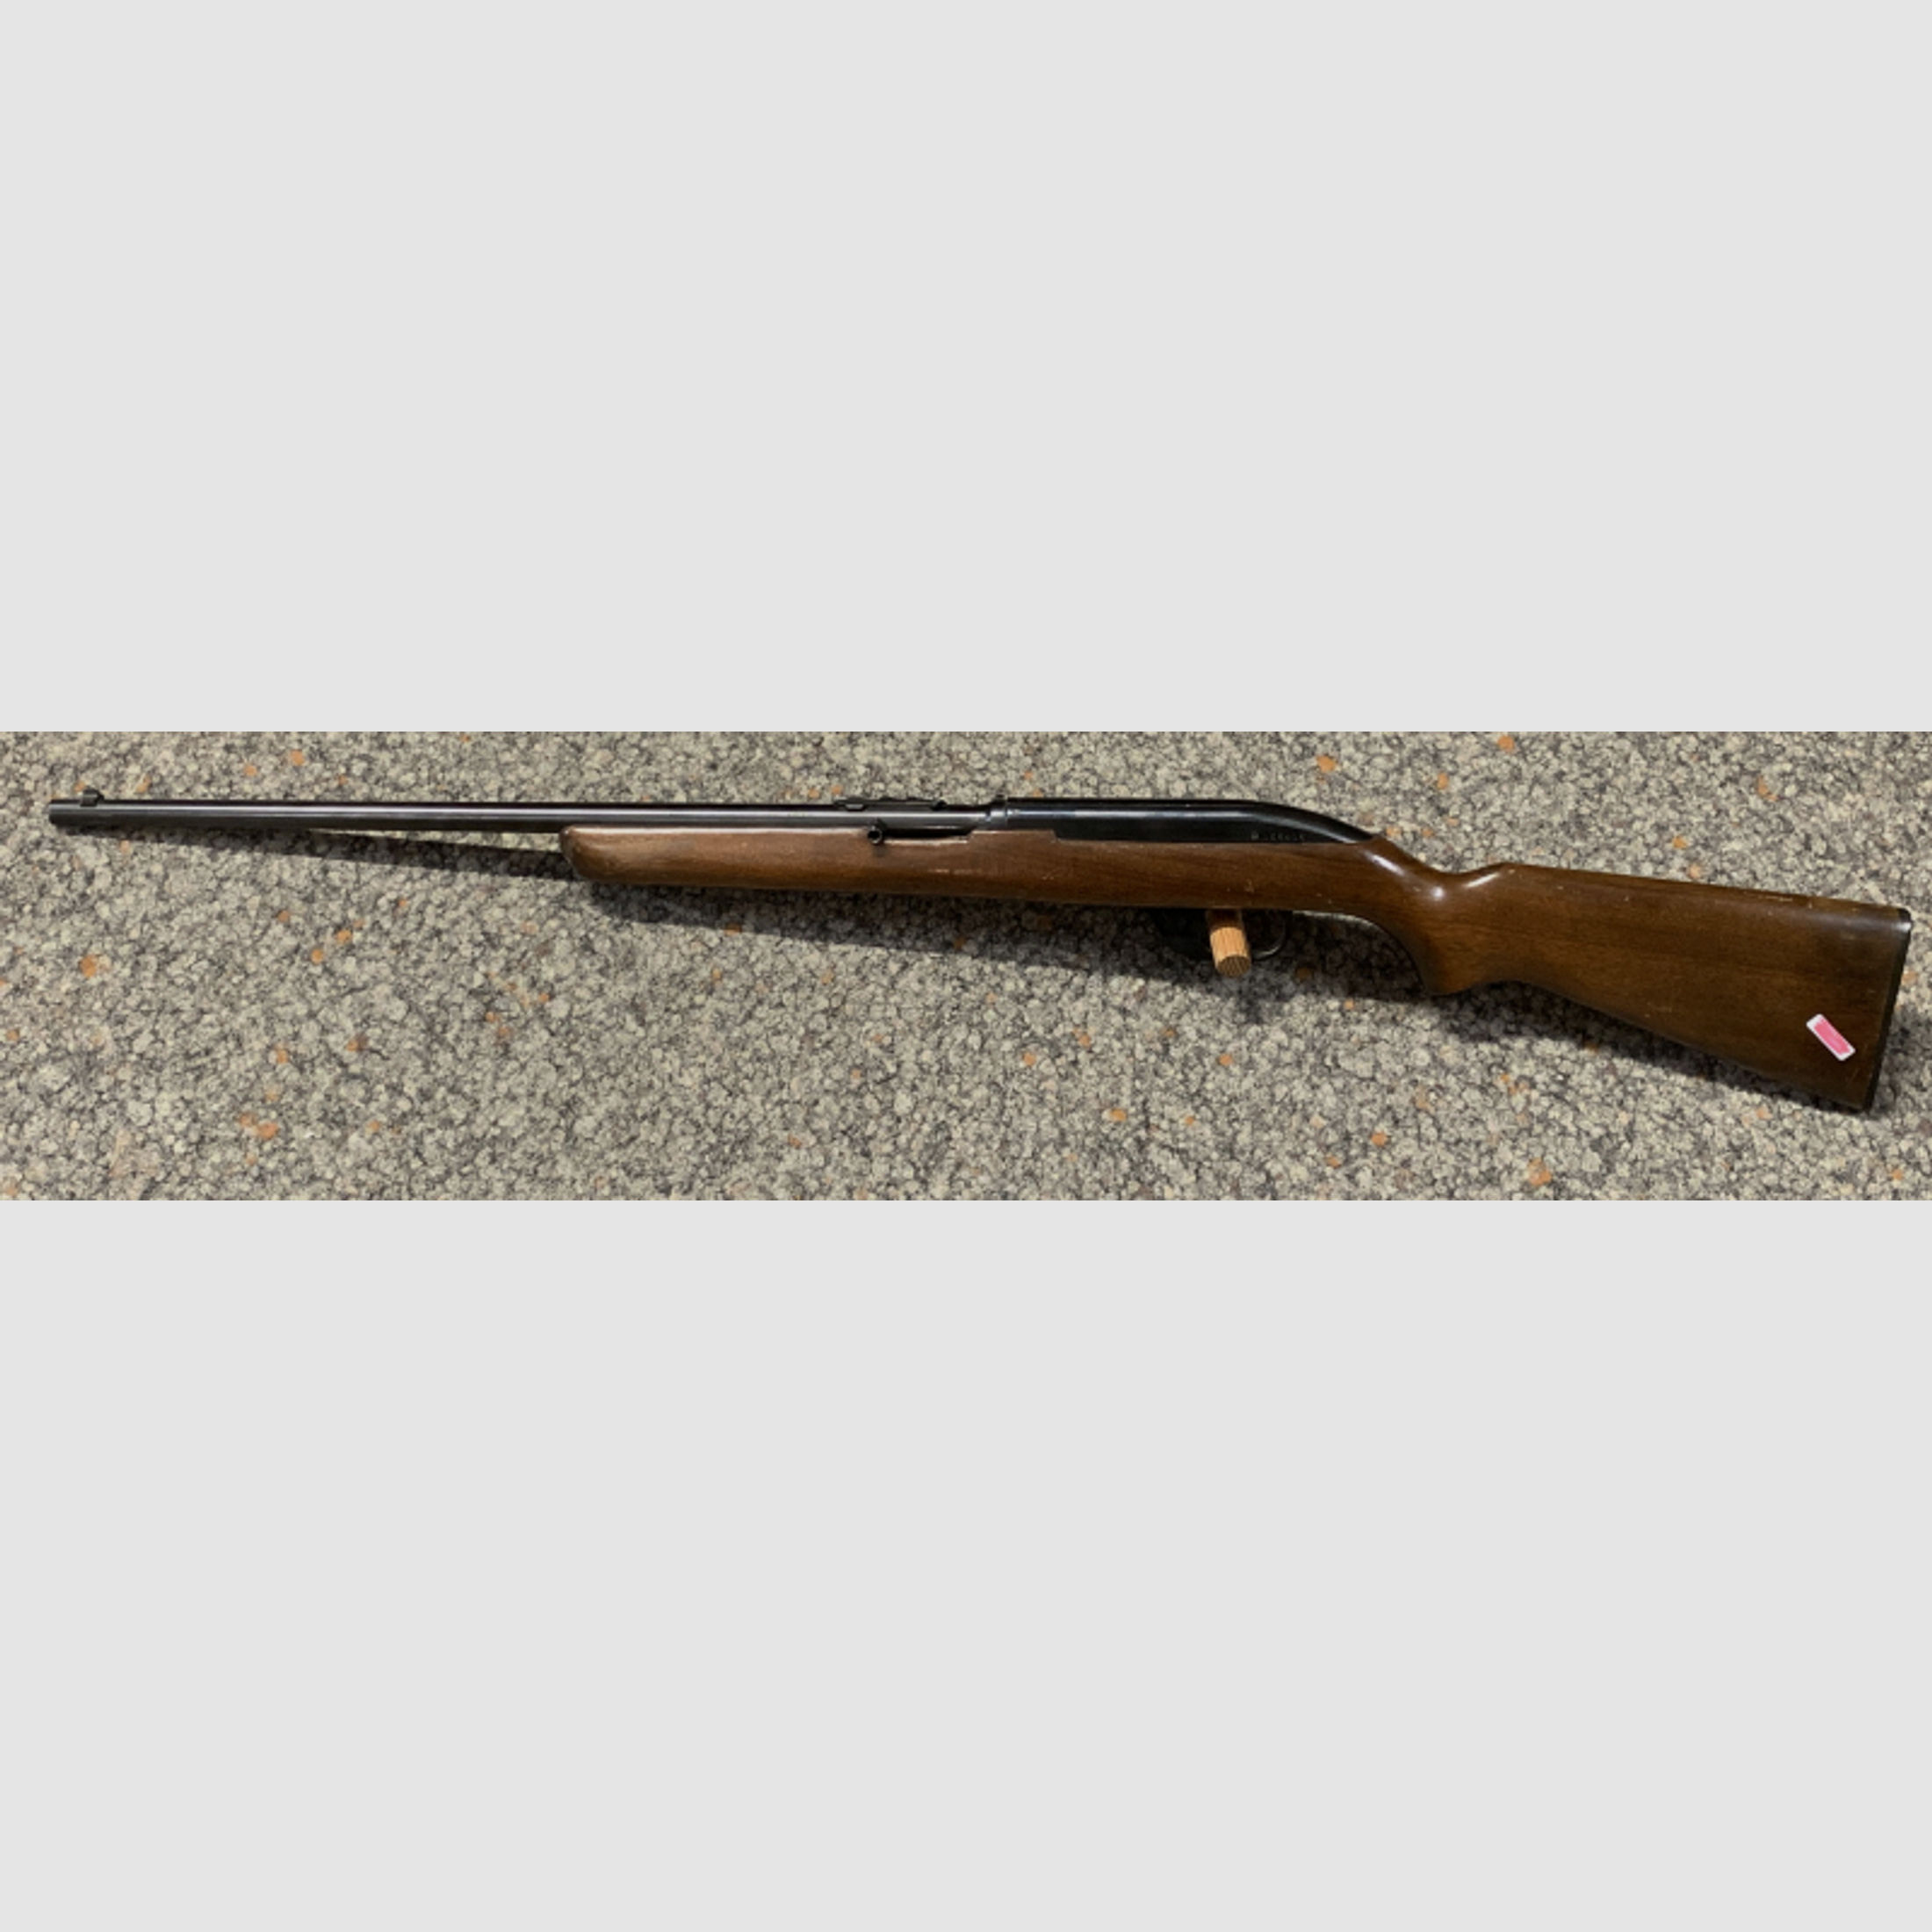 Winchester Mod. 77 .22lr. zur Restaurierung, als Ersatzteilespender - defekt!